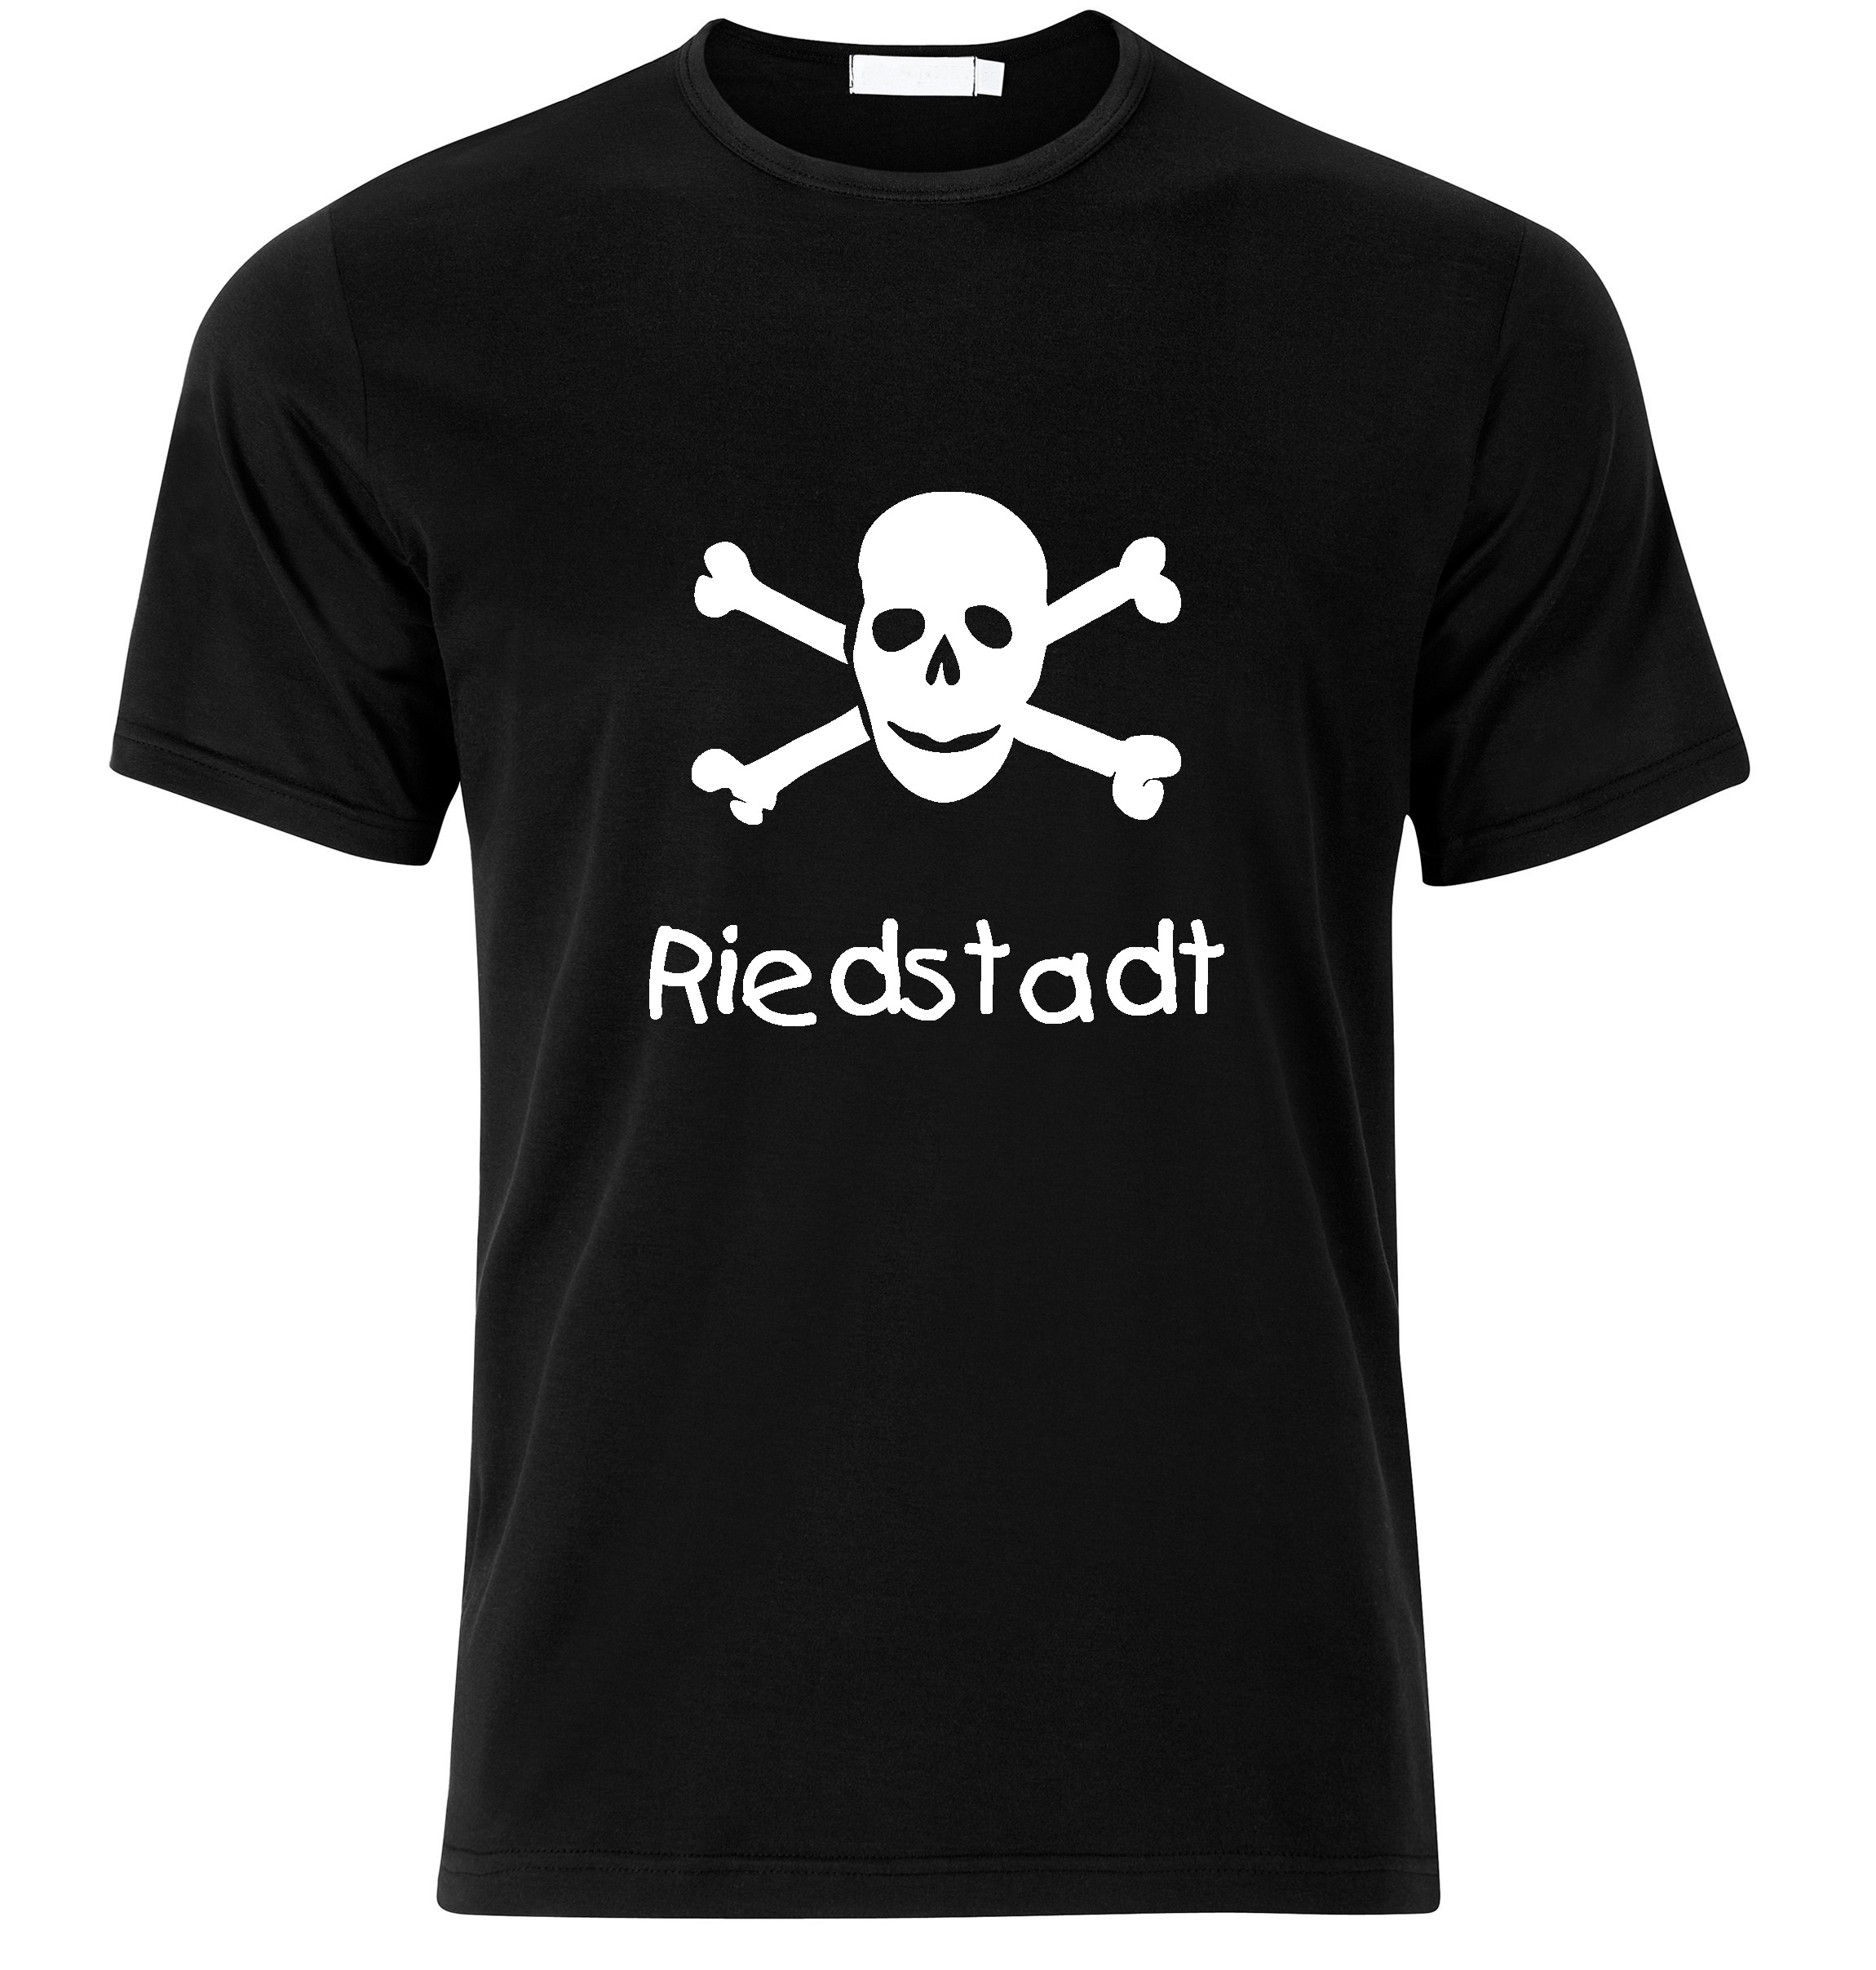 T-Shirt Riedstadt Jolly Roger, Totenkopf